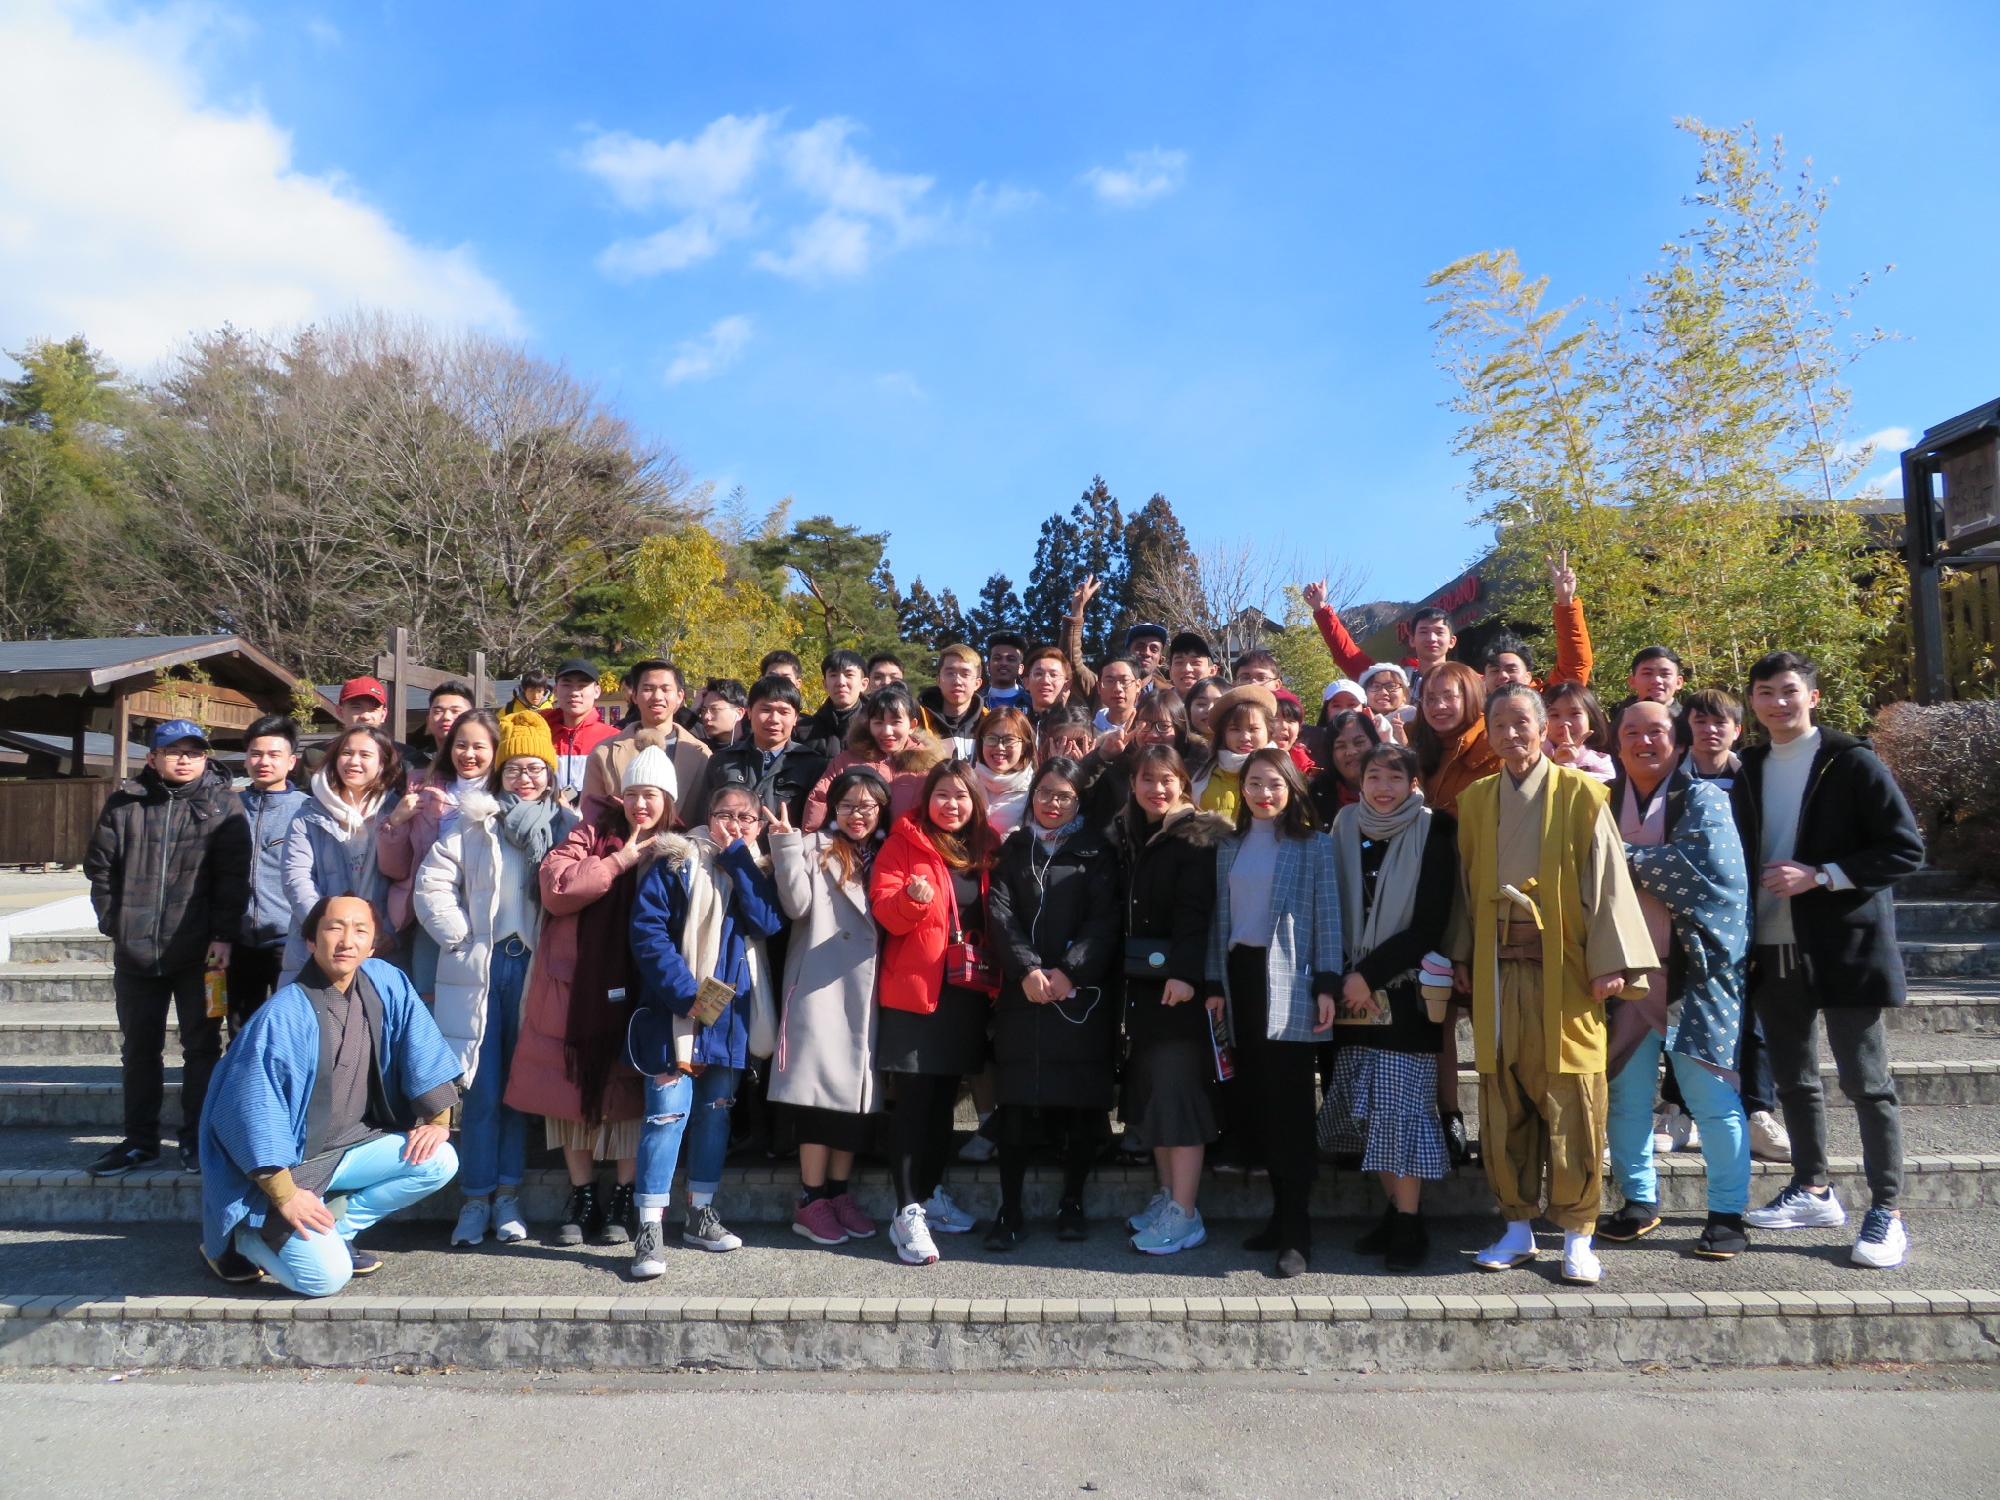 2019/2 一泊旅行に行きました(日光・江戸村）Overnight school trip: We traveled to Nikko and Edo Wonderland